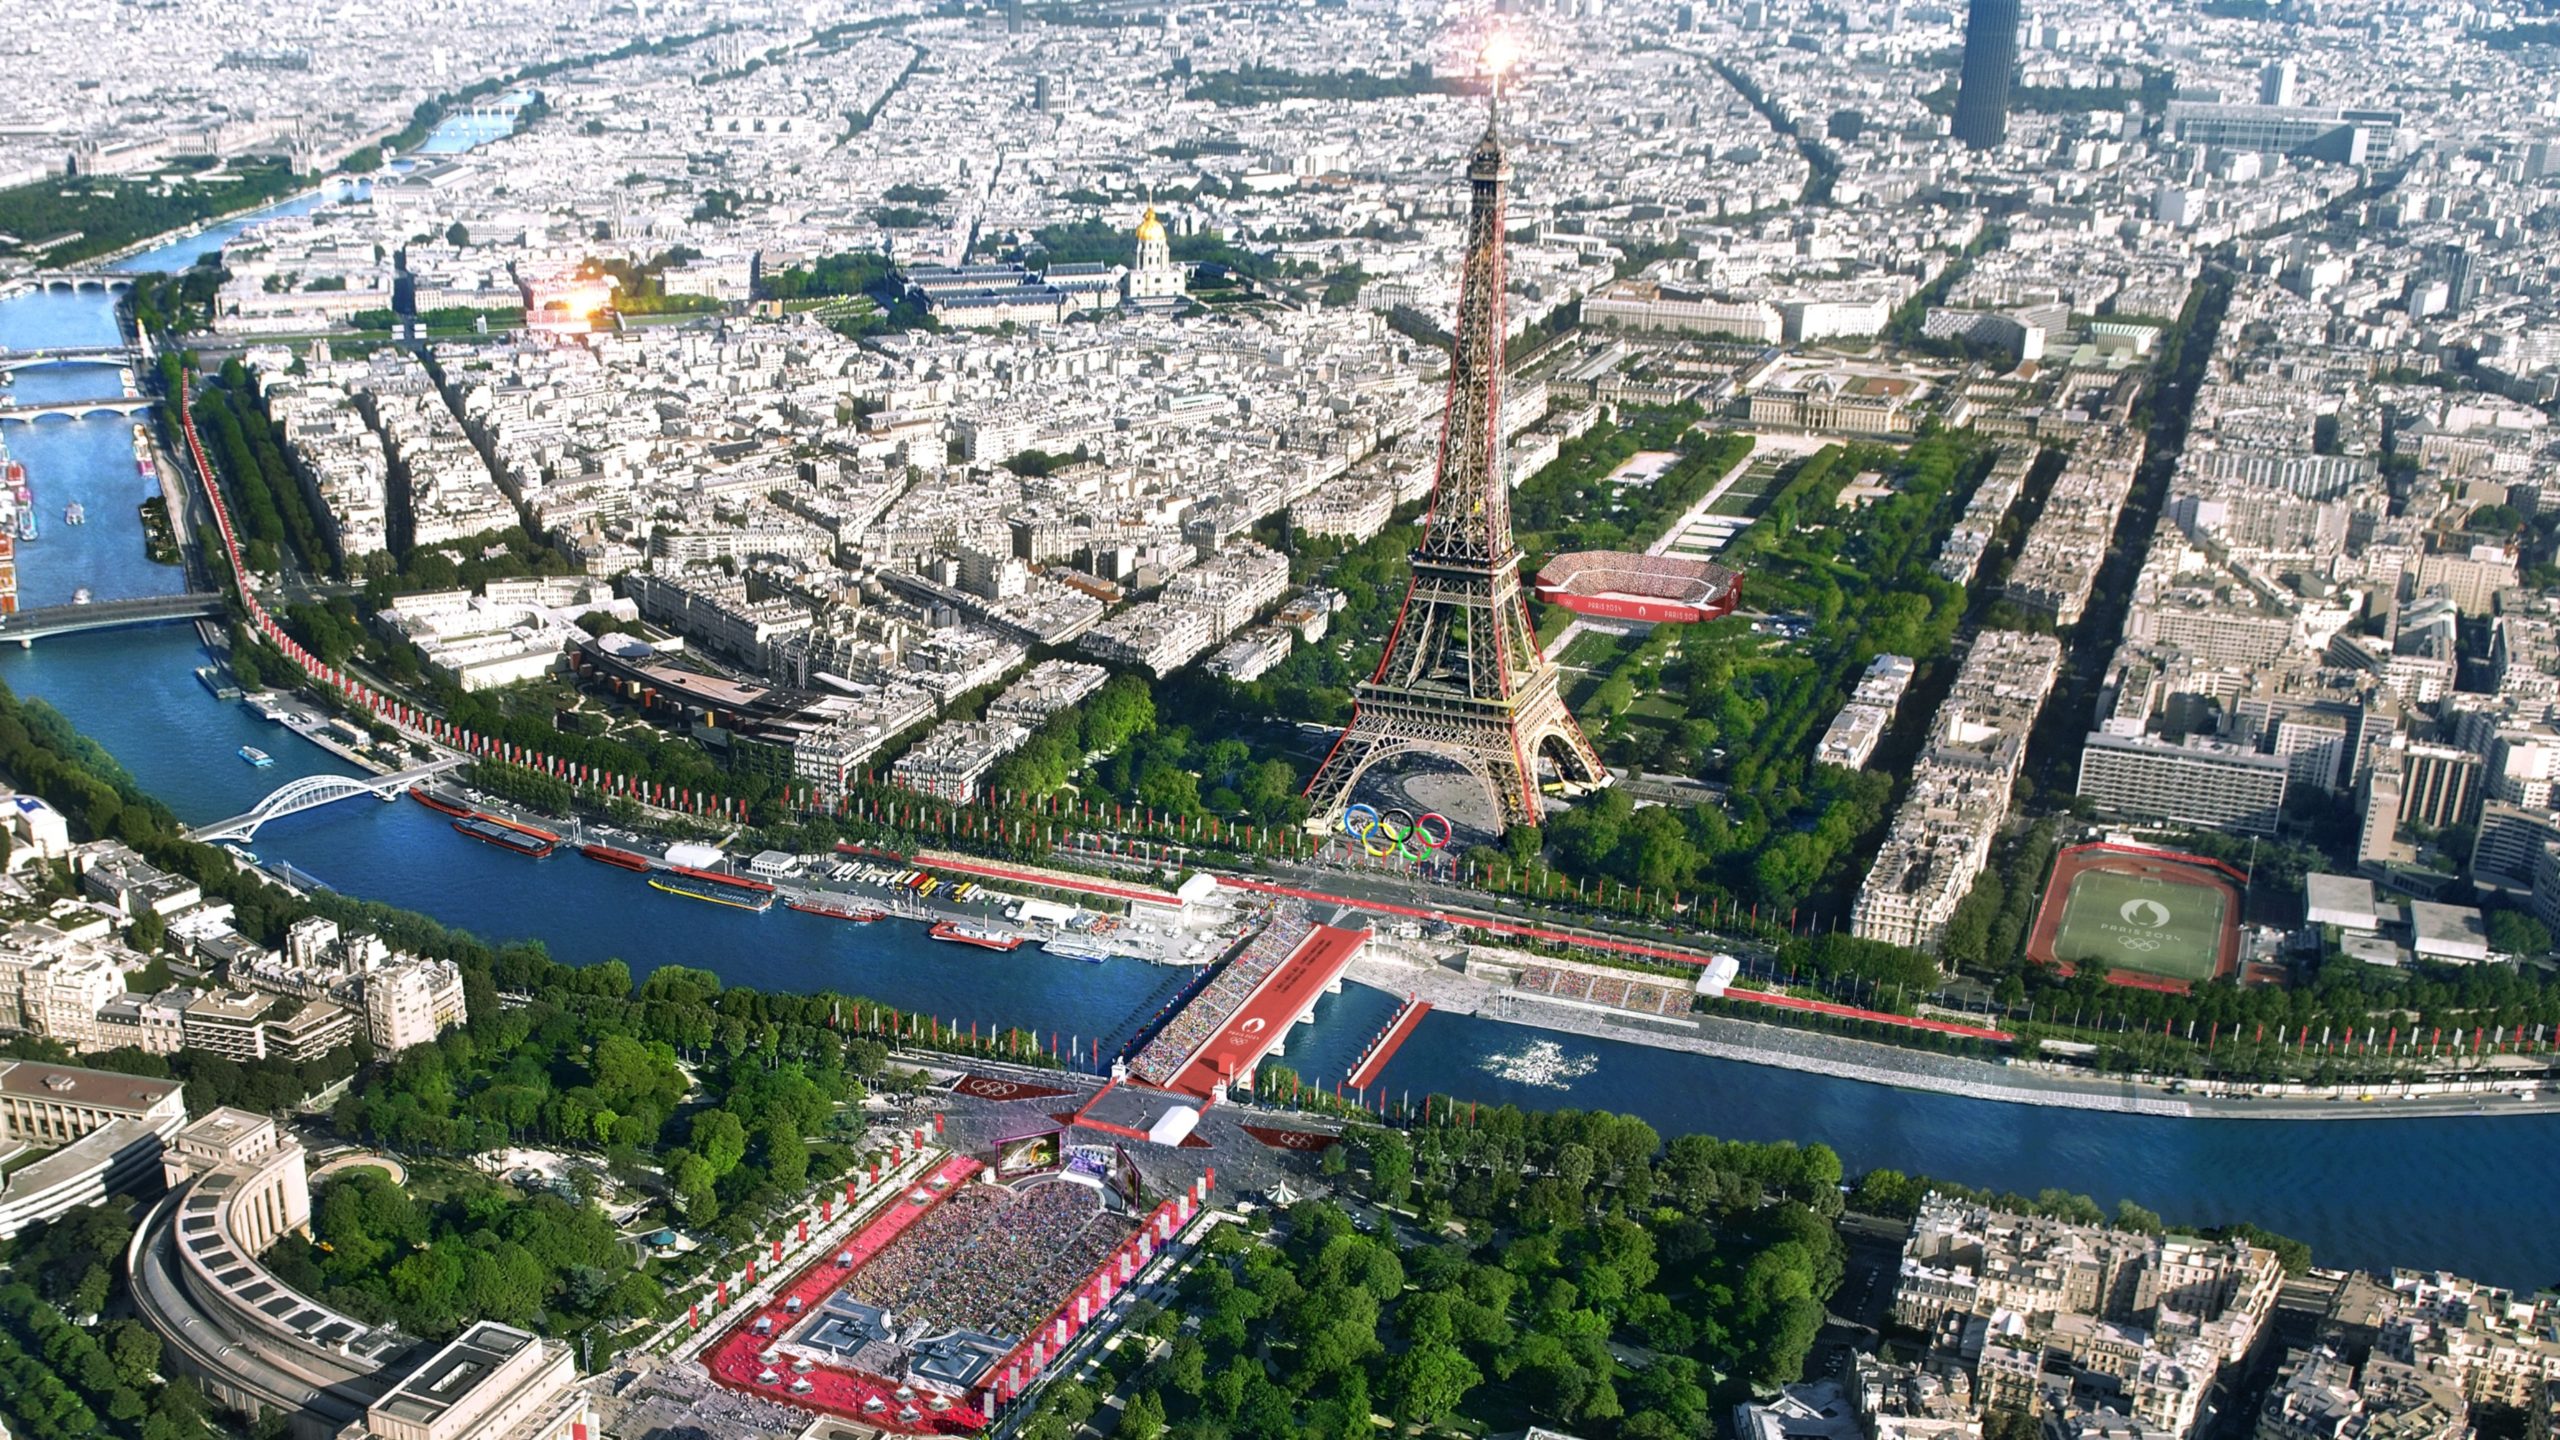 Ingresso mais barato para a Olimpíada de Paris-2024 custará cerca de R$ 130